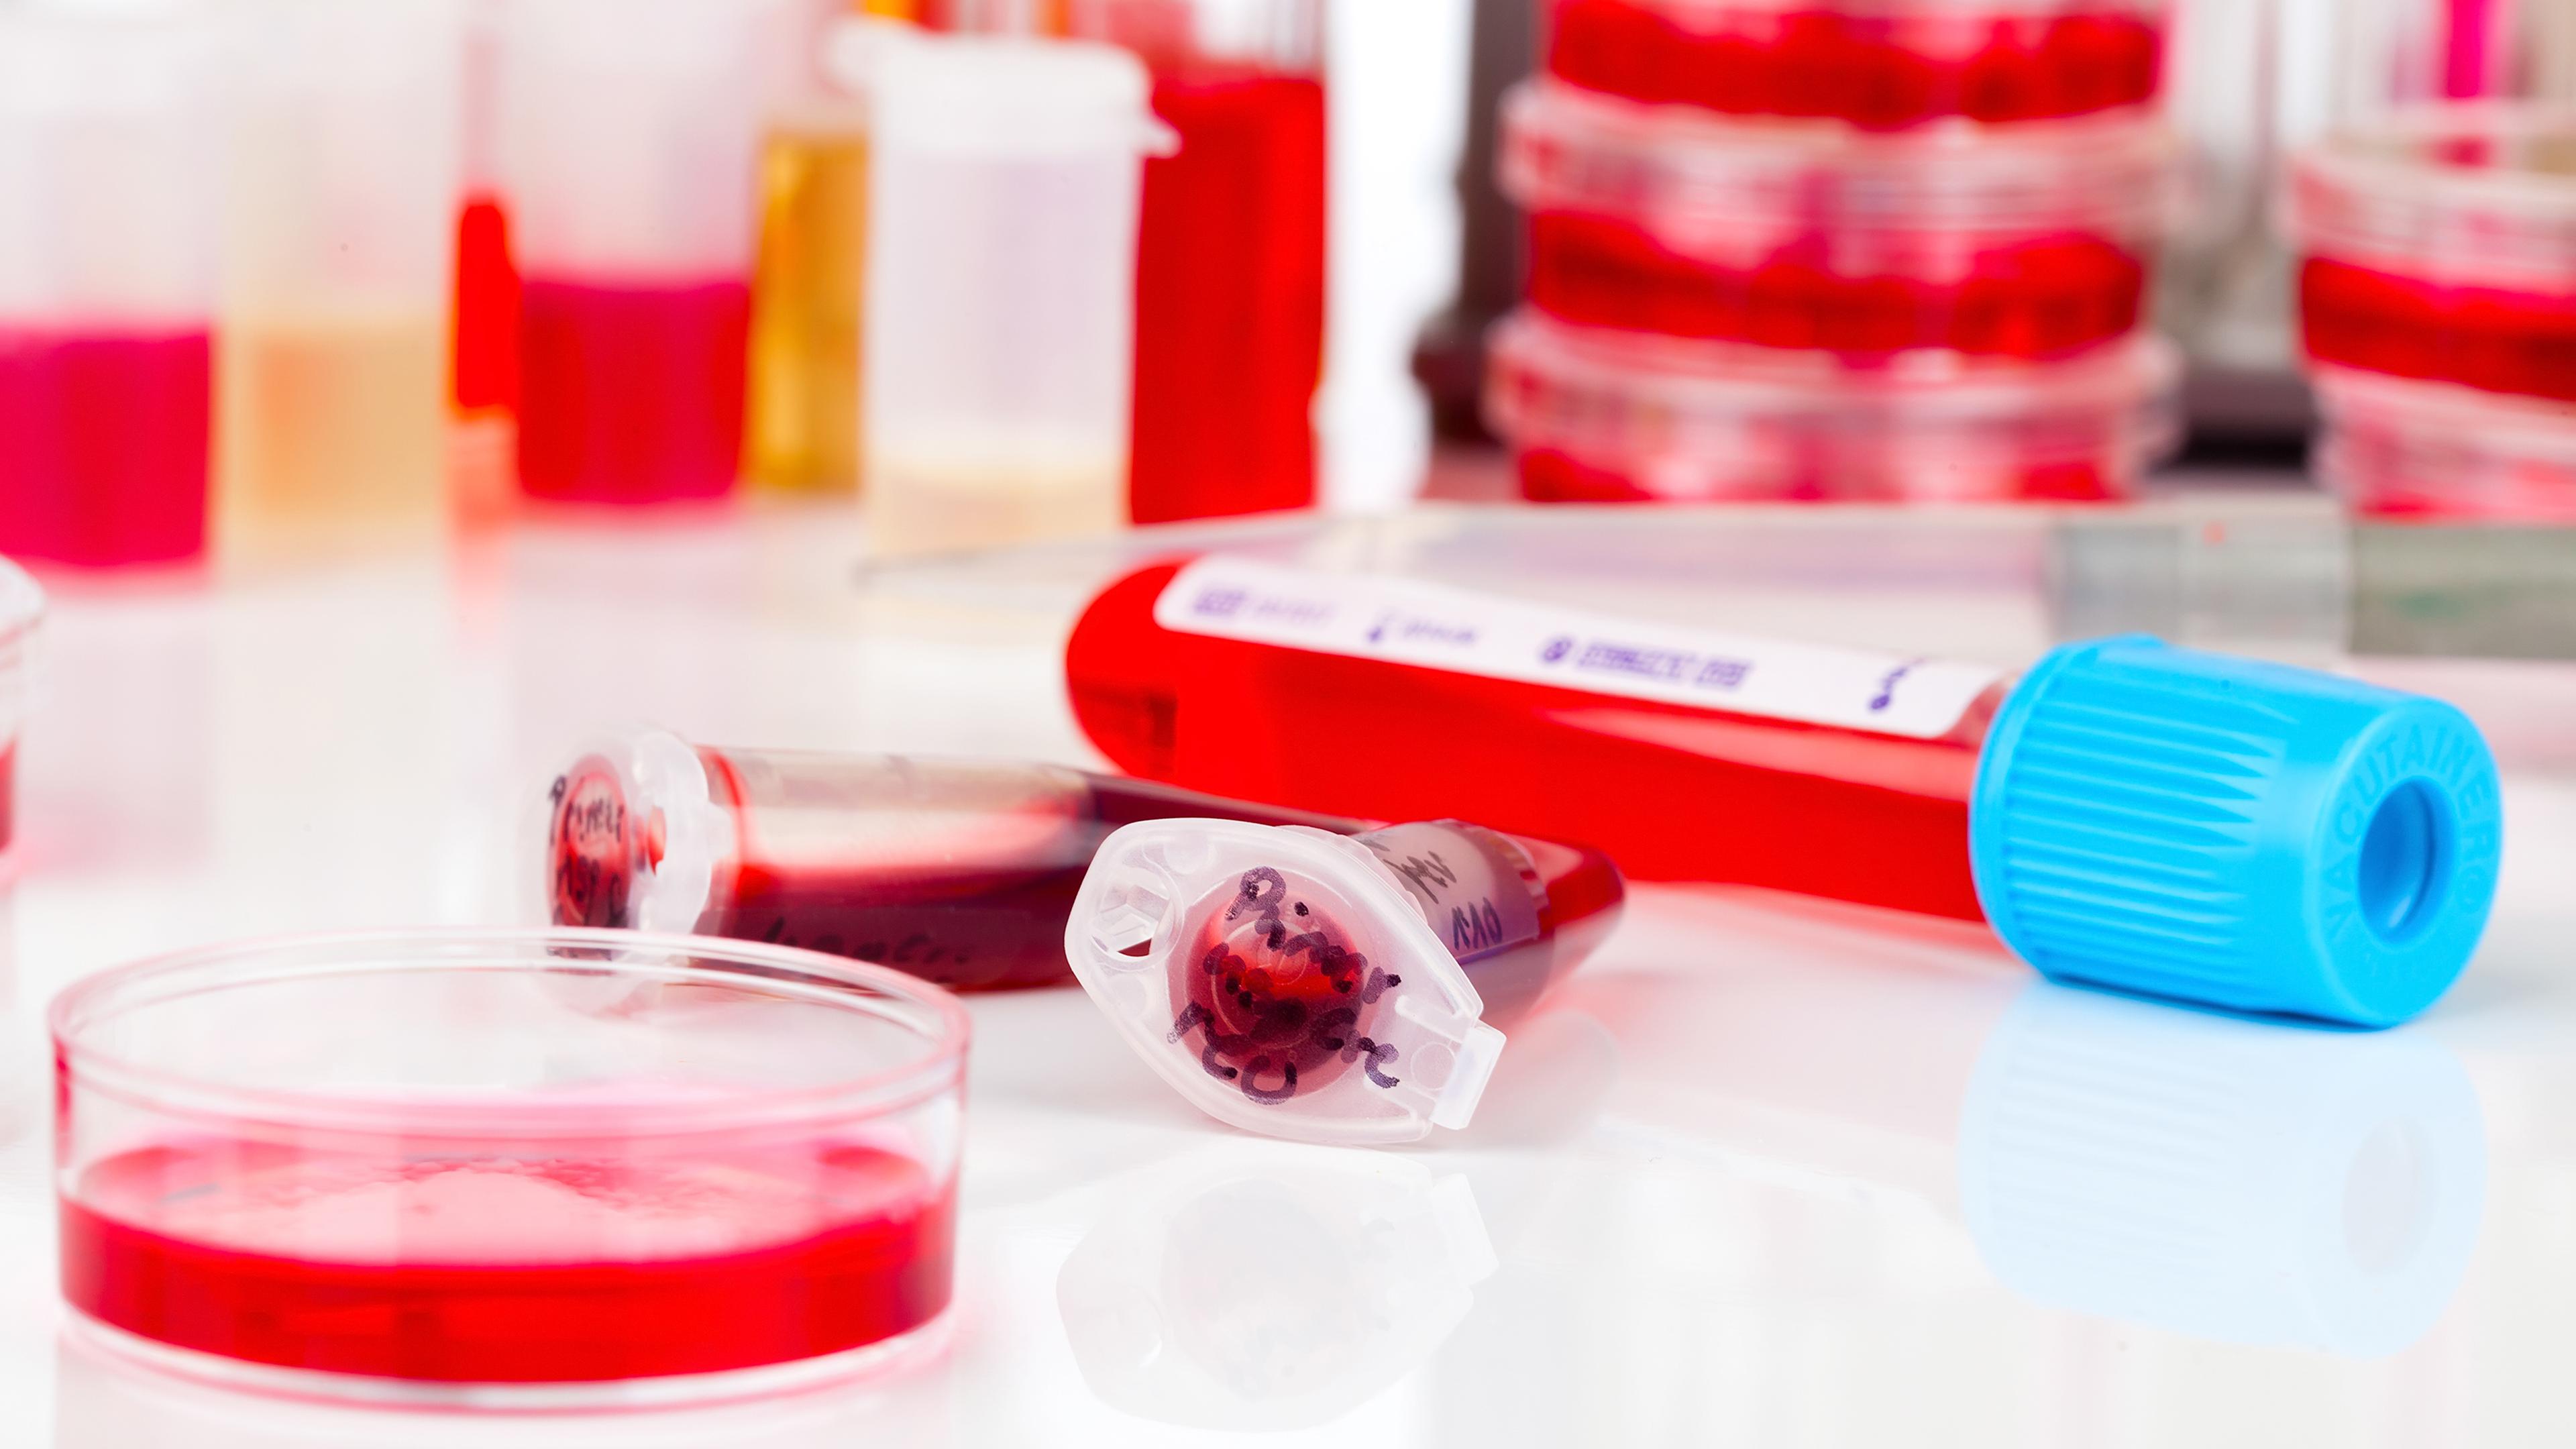 Auf einem Tisch in einem Labor liegen Petrischalen und Probenbehälter, gefüllt mit Blutproben.